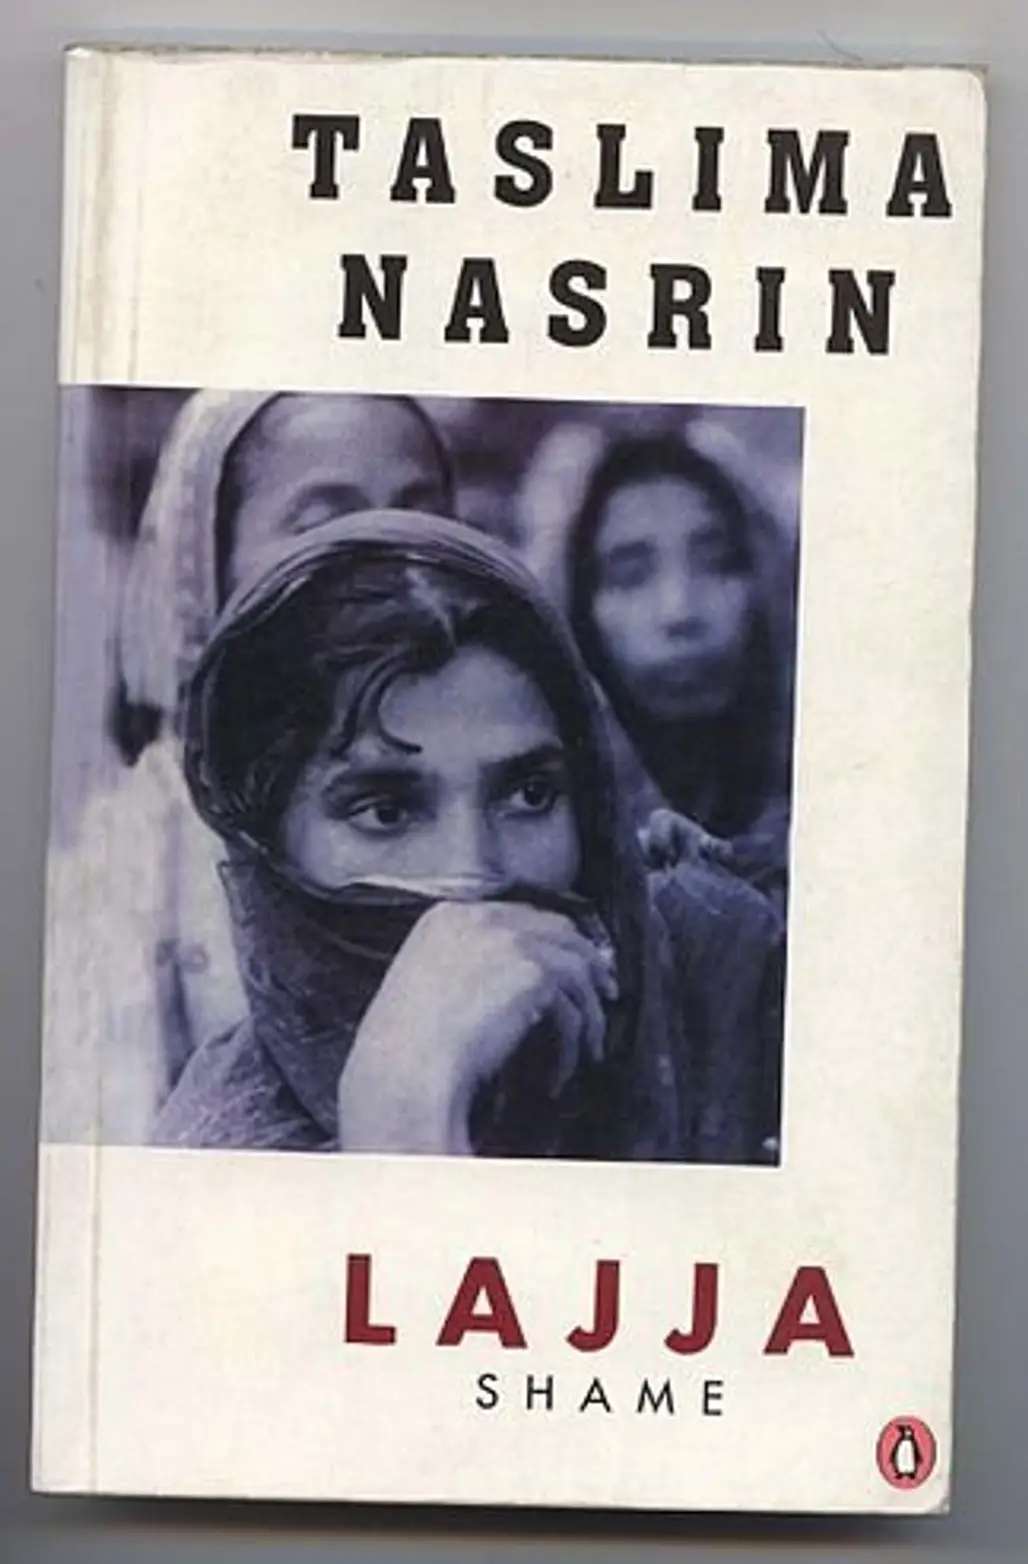 Lajja by Taslima Nasrin